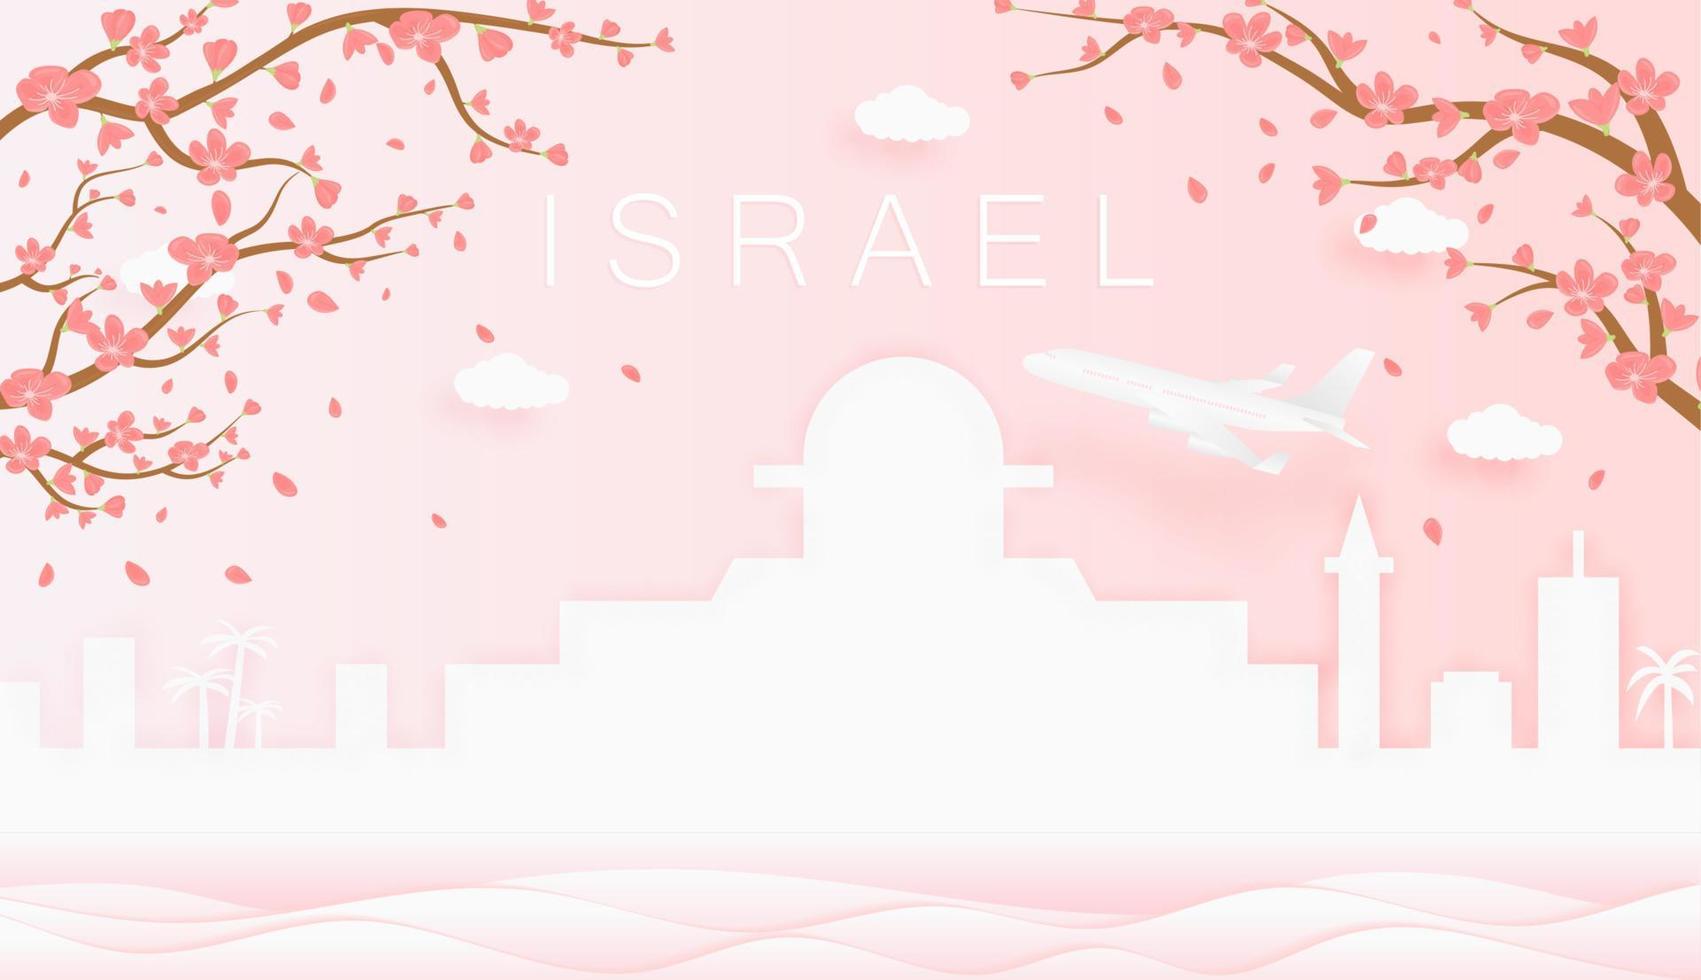 panorama viagem cartão postal, poster, Tour publicidade do mundo famoso marcos do Israel, Primavera estação com florescendo flores dentro árvore vetor